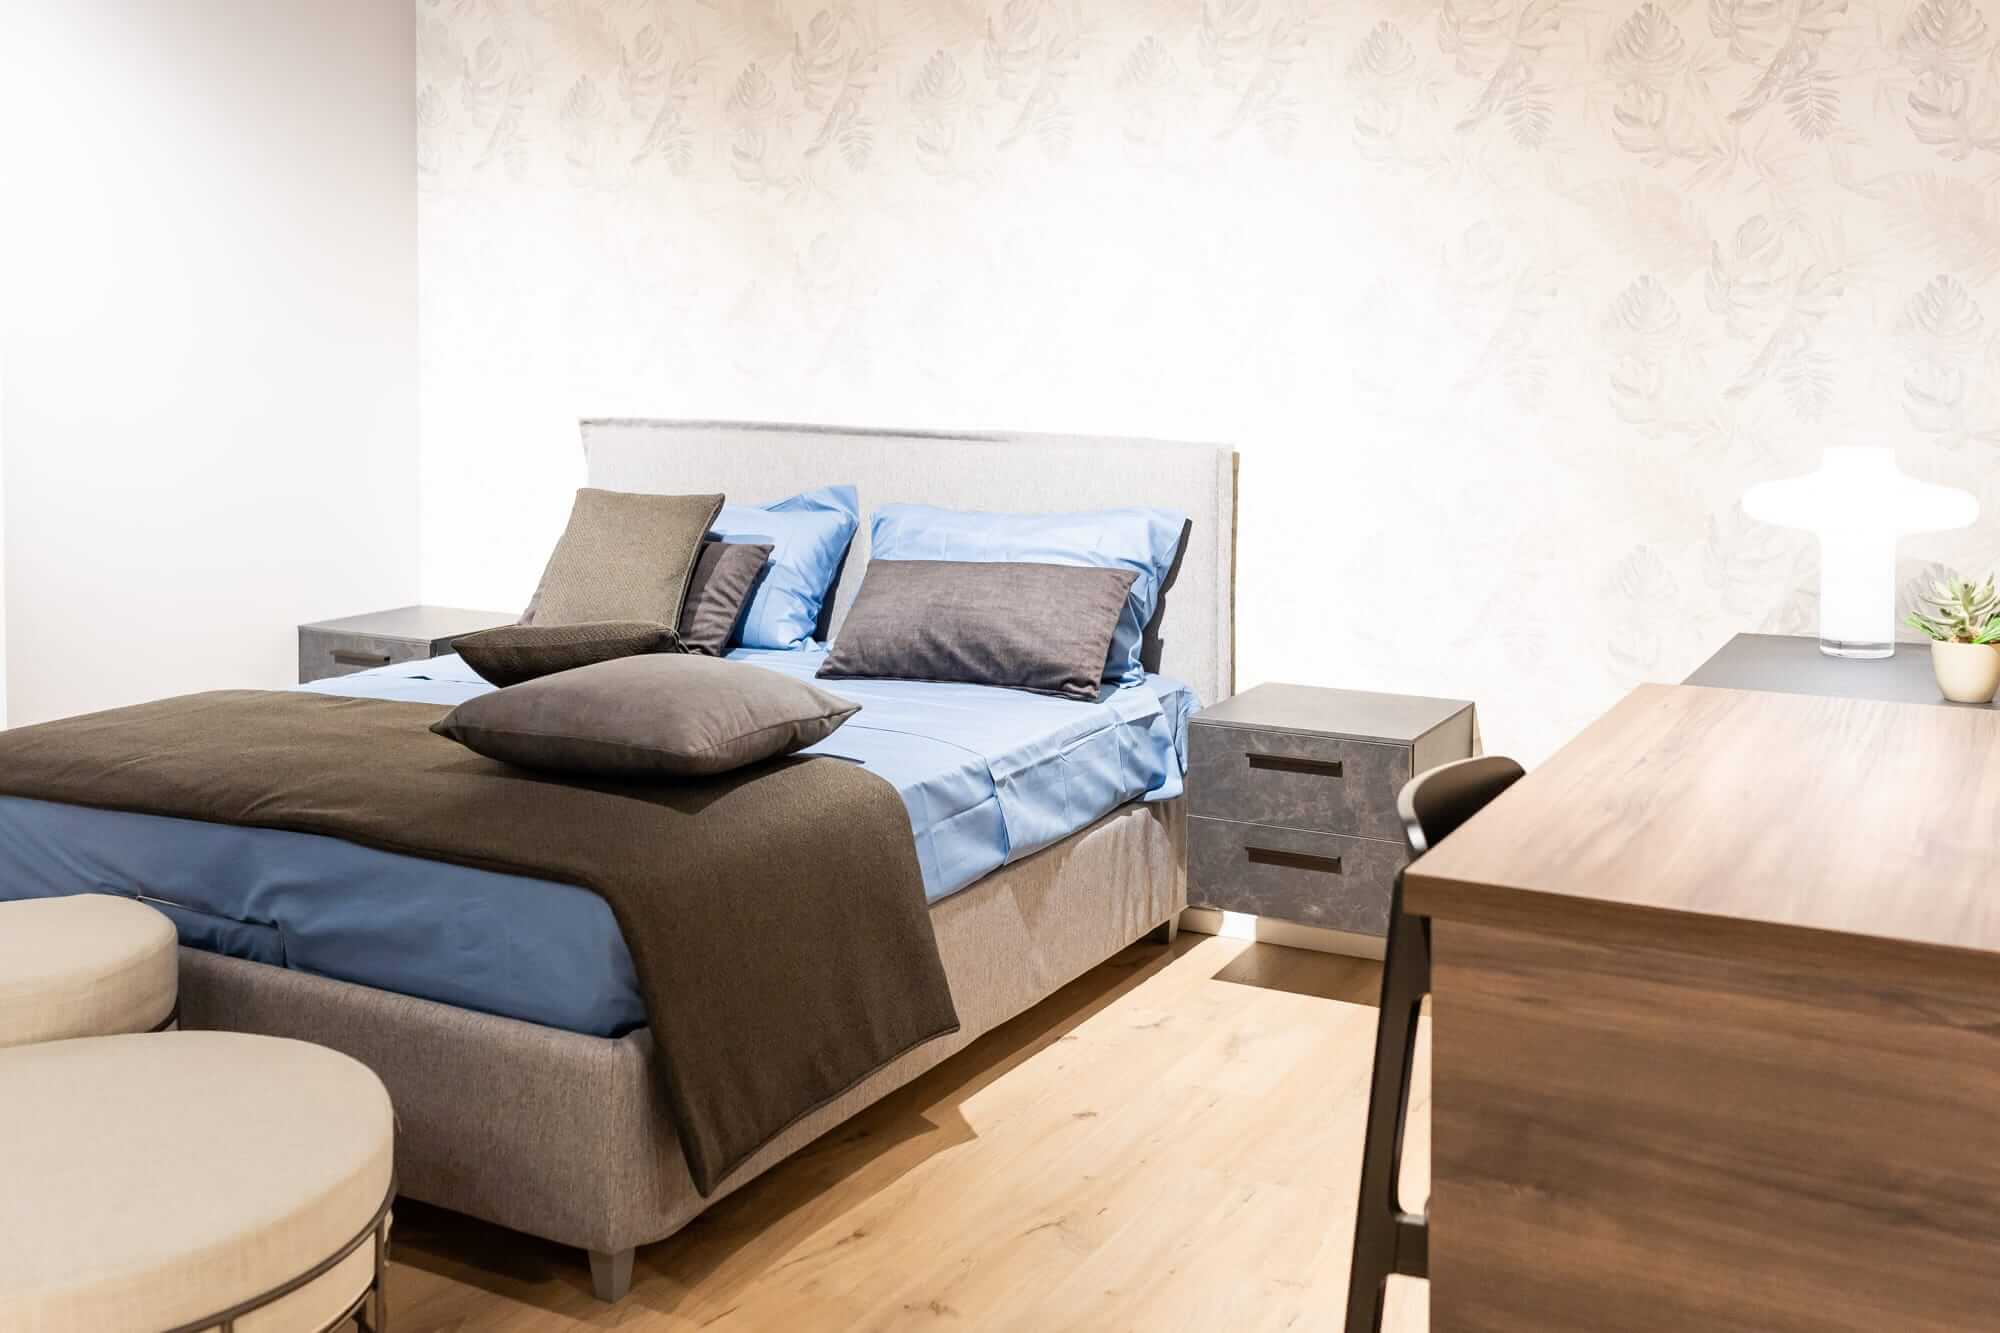 Camere da letto arredamento design EdilDesign Cavallermaggiore Cuneo Ediltutto